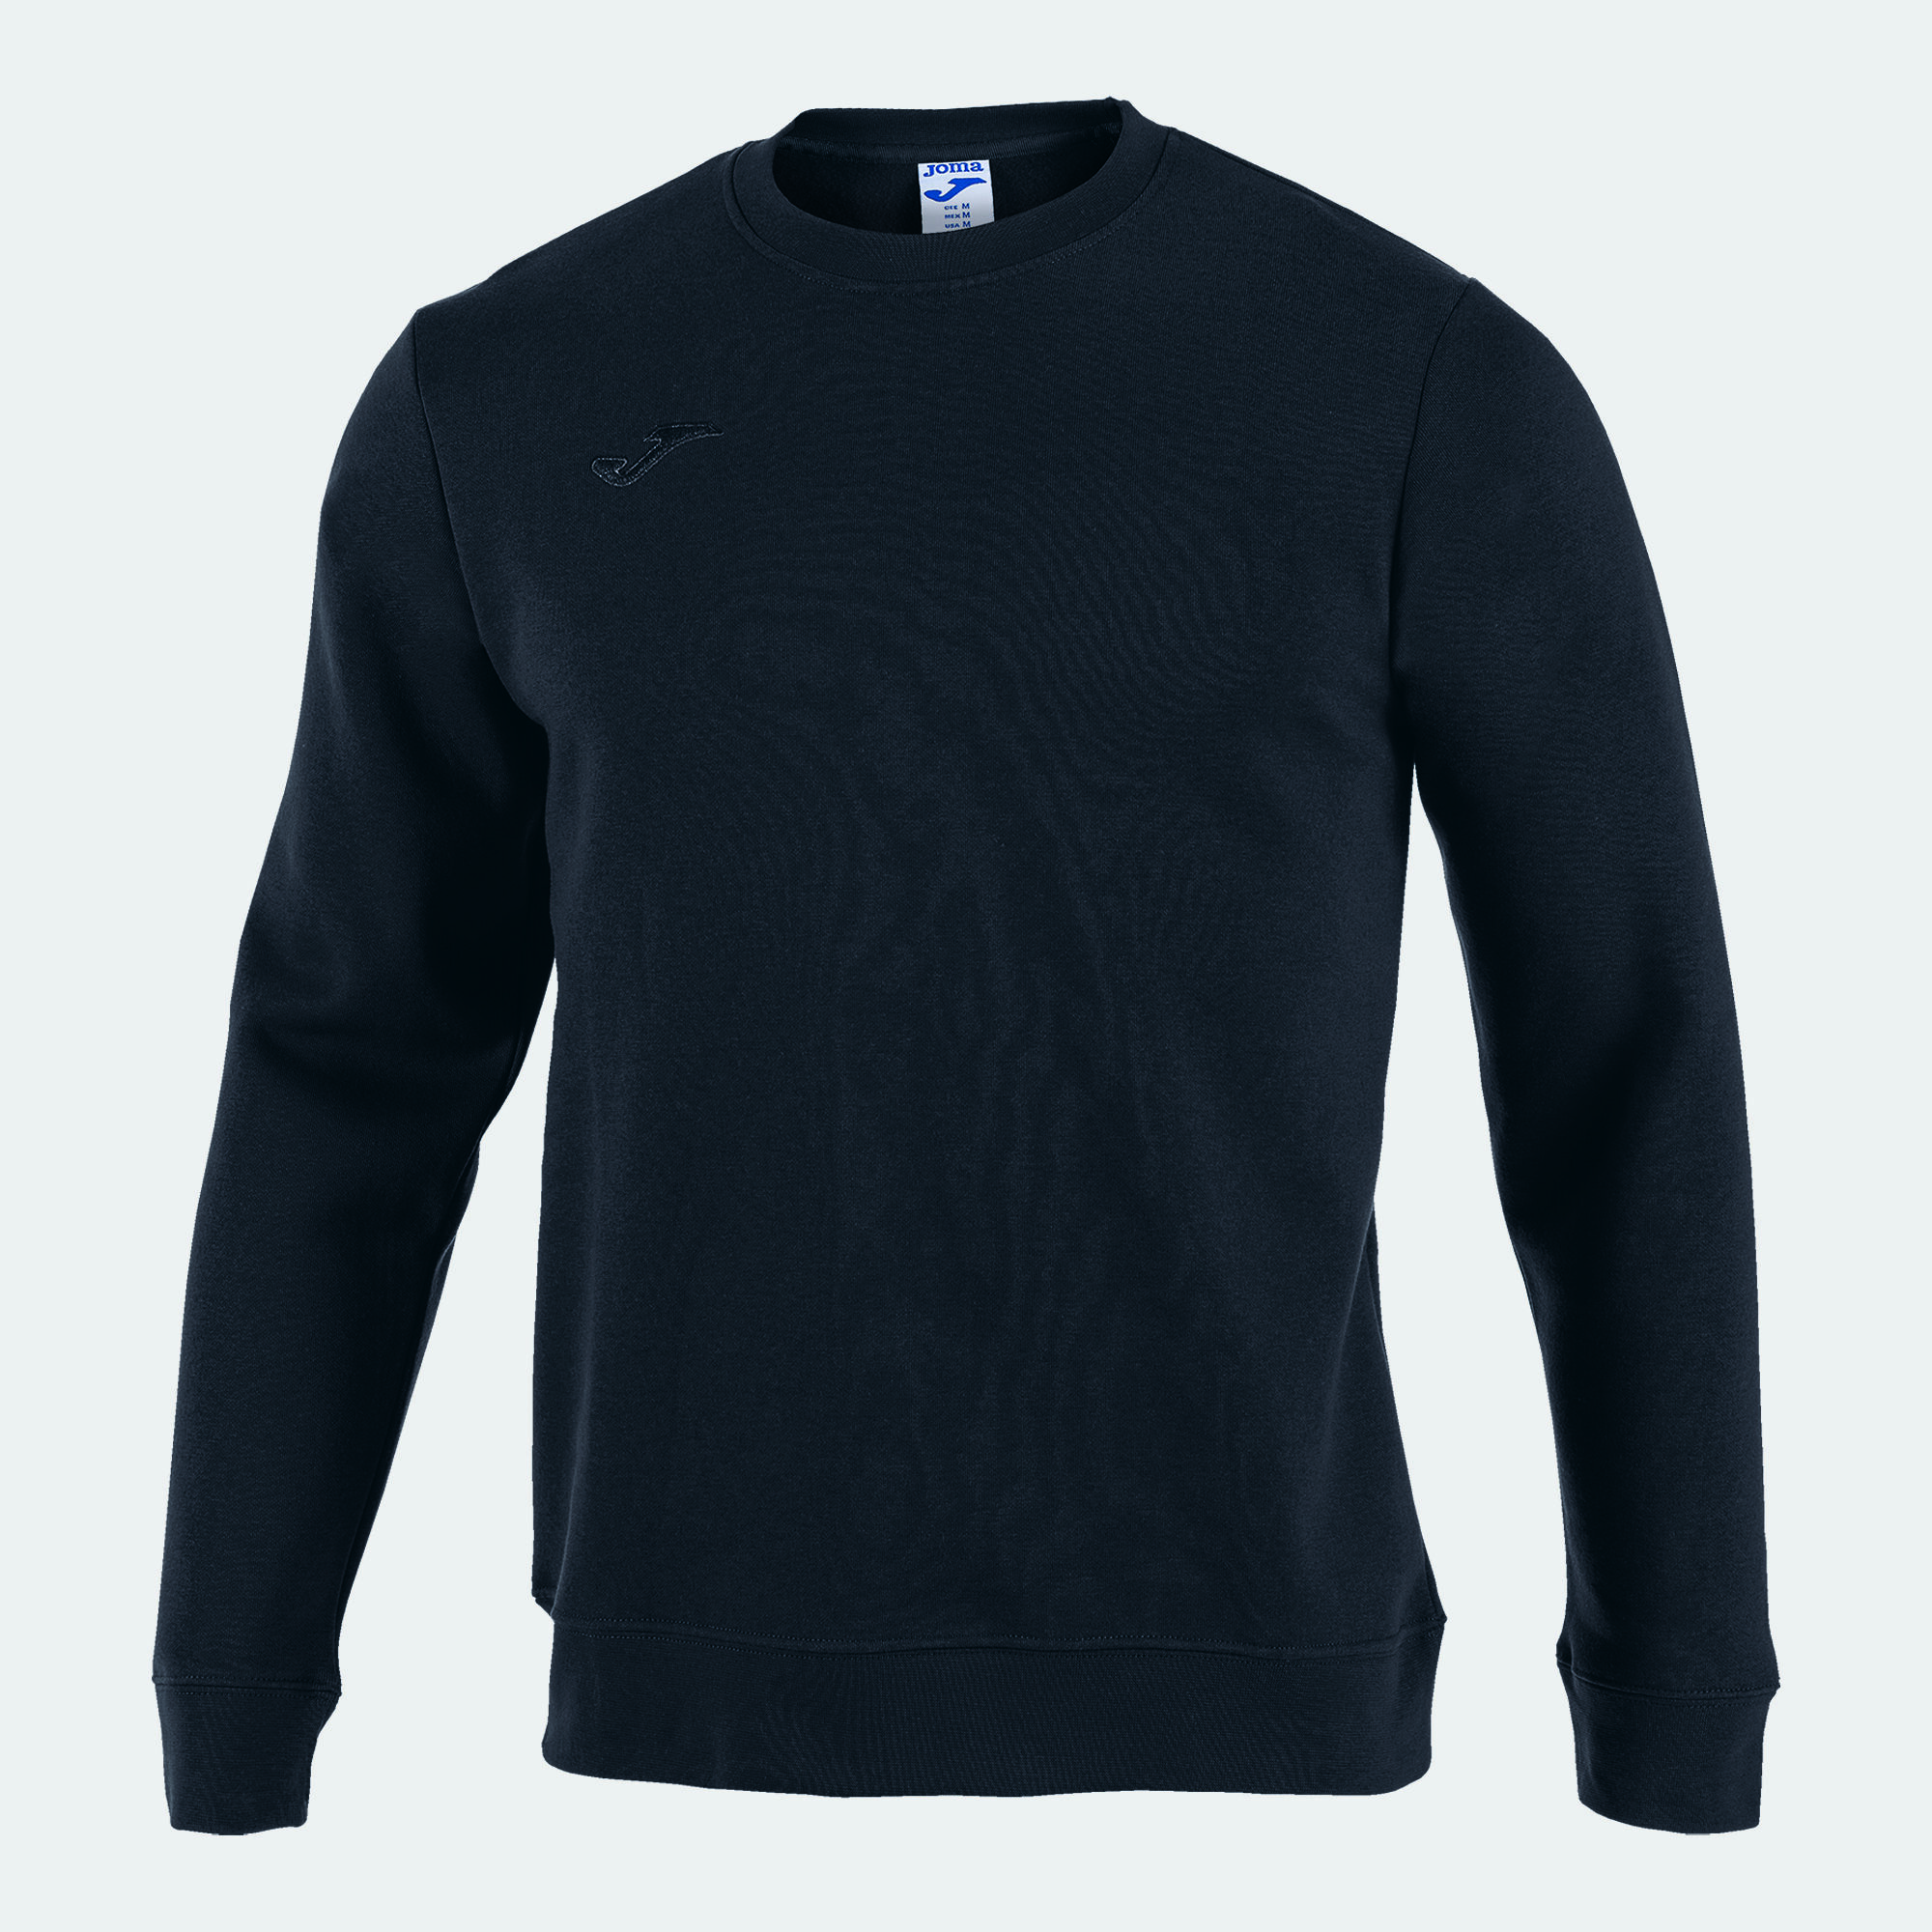 Sweatshirt man Santorini black